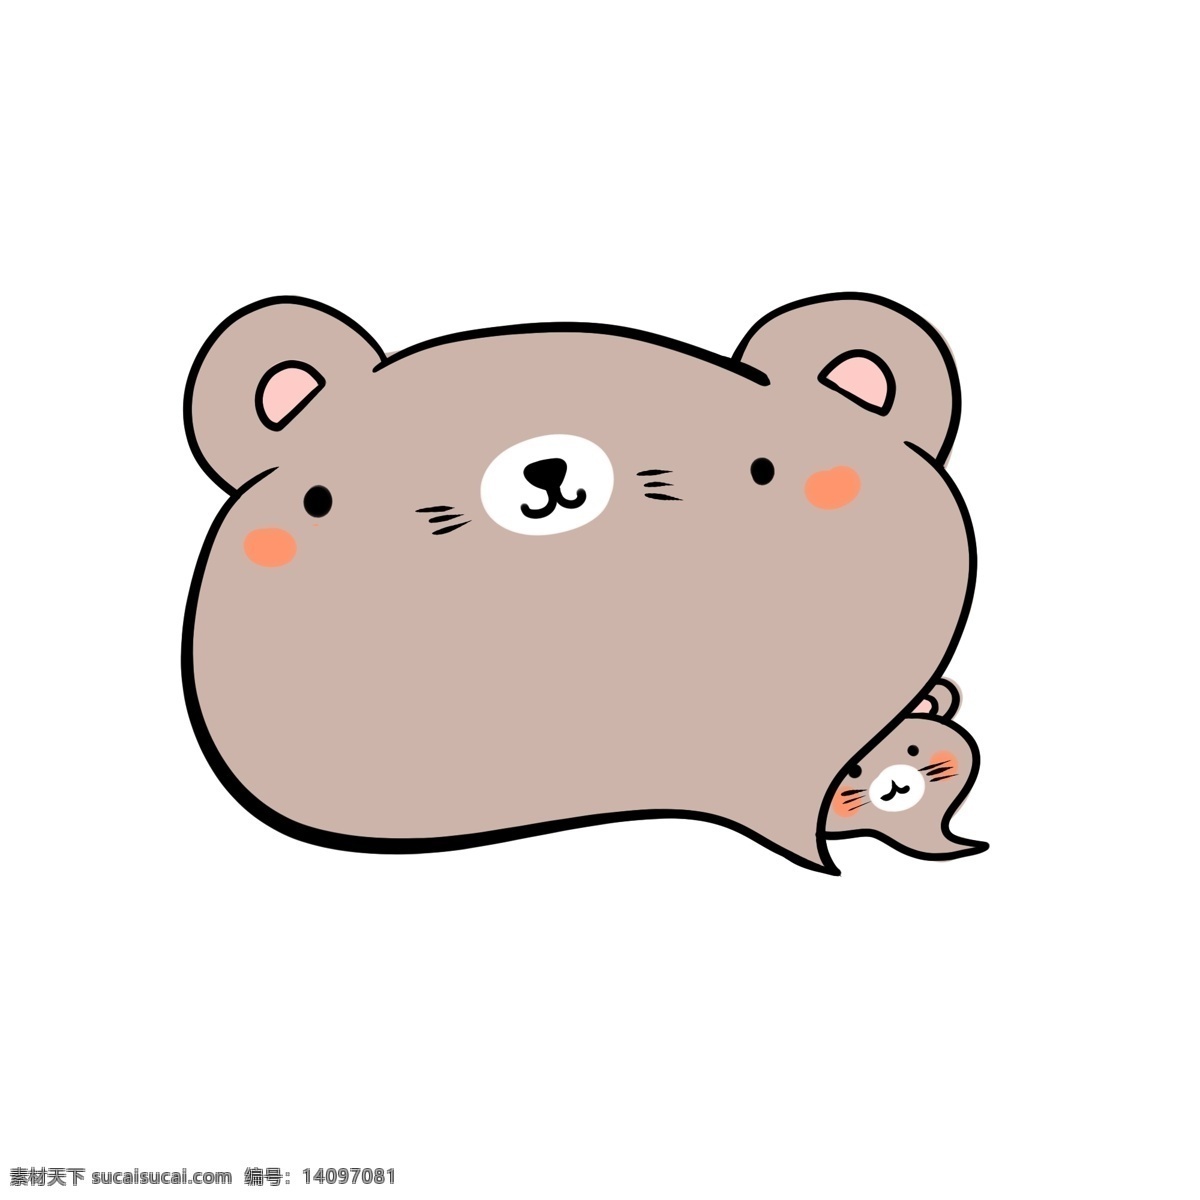 褐色 可爱 小 熊 对话框 小熊 大小相依偎 好玩 好看 手绘 卡通 动物 实用 边框 粉红色